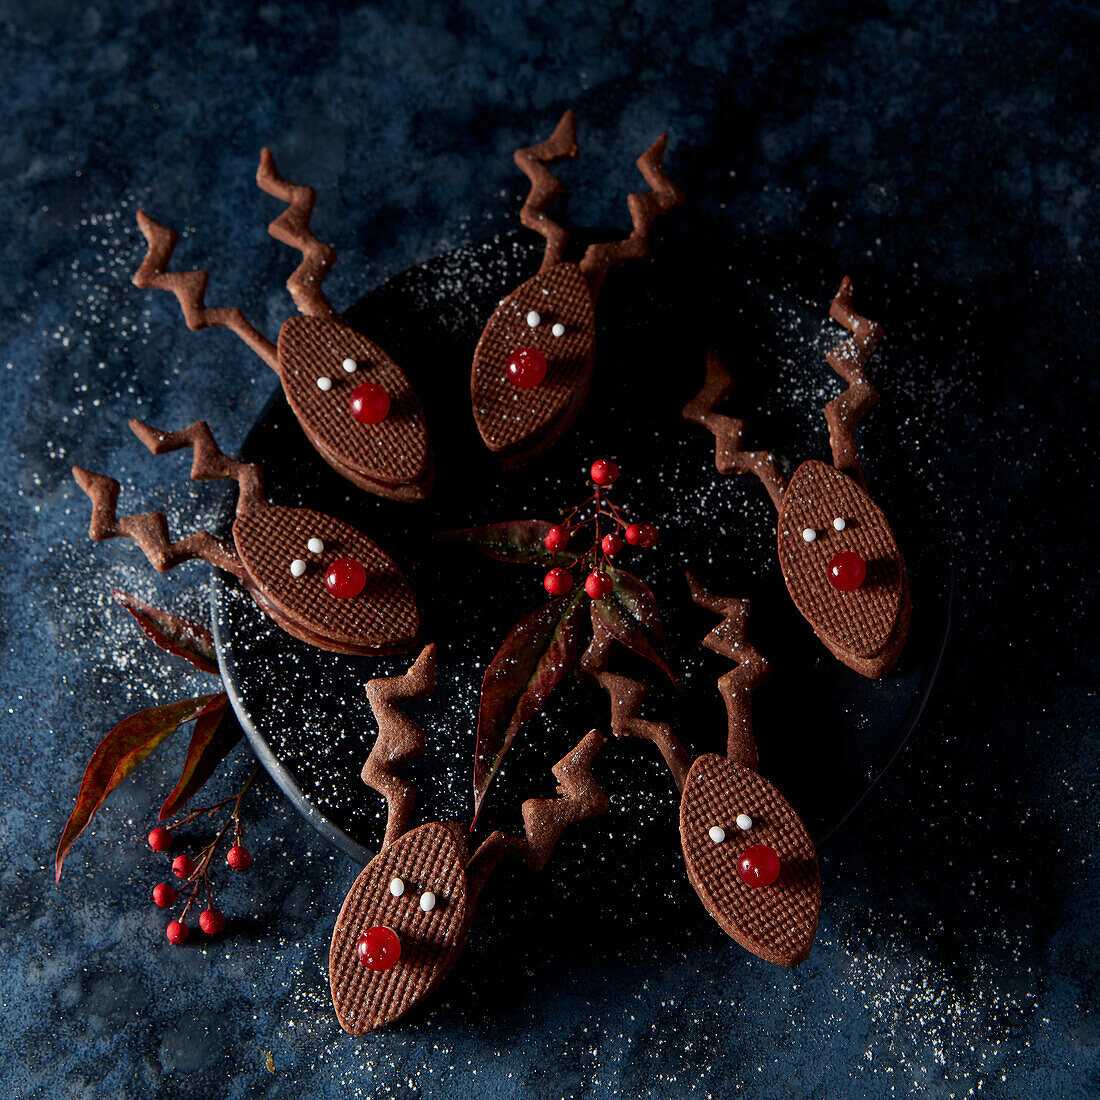 Reindeer-shaped chocolate shortbread cookies